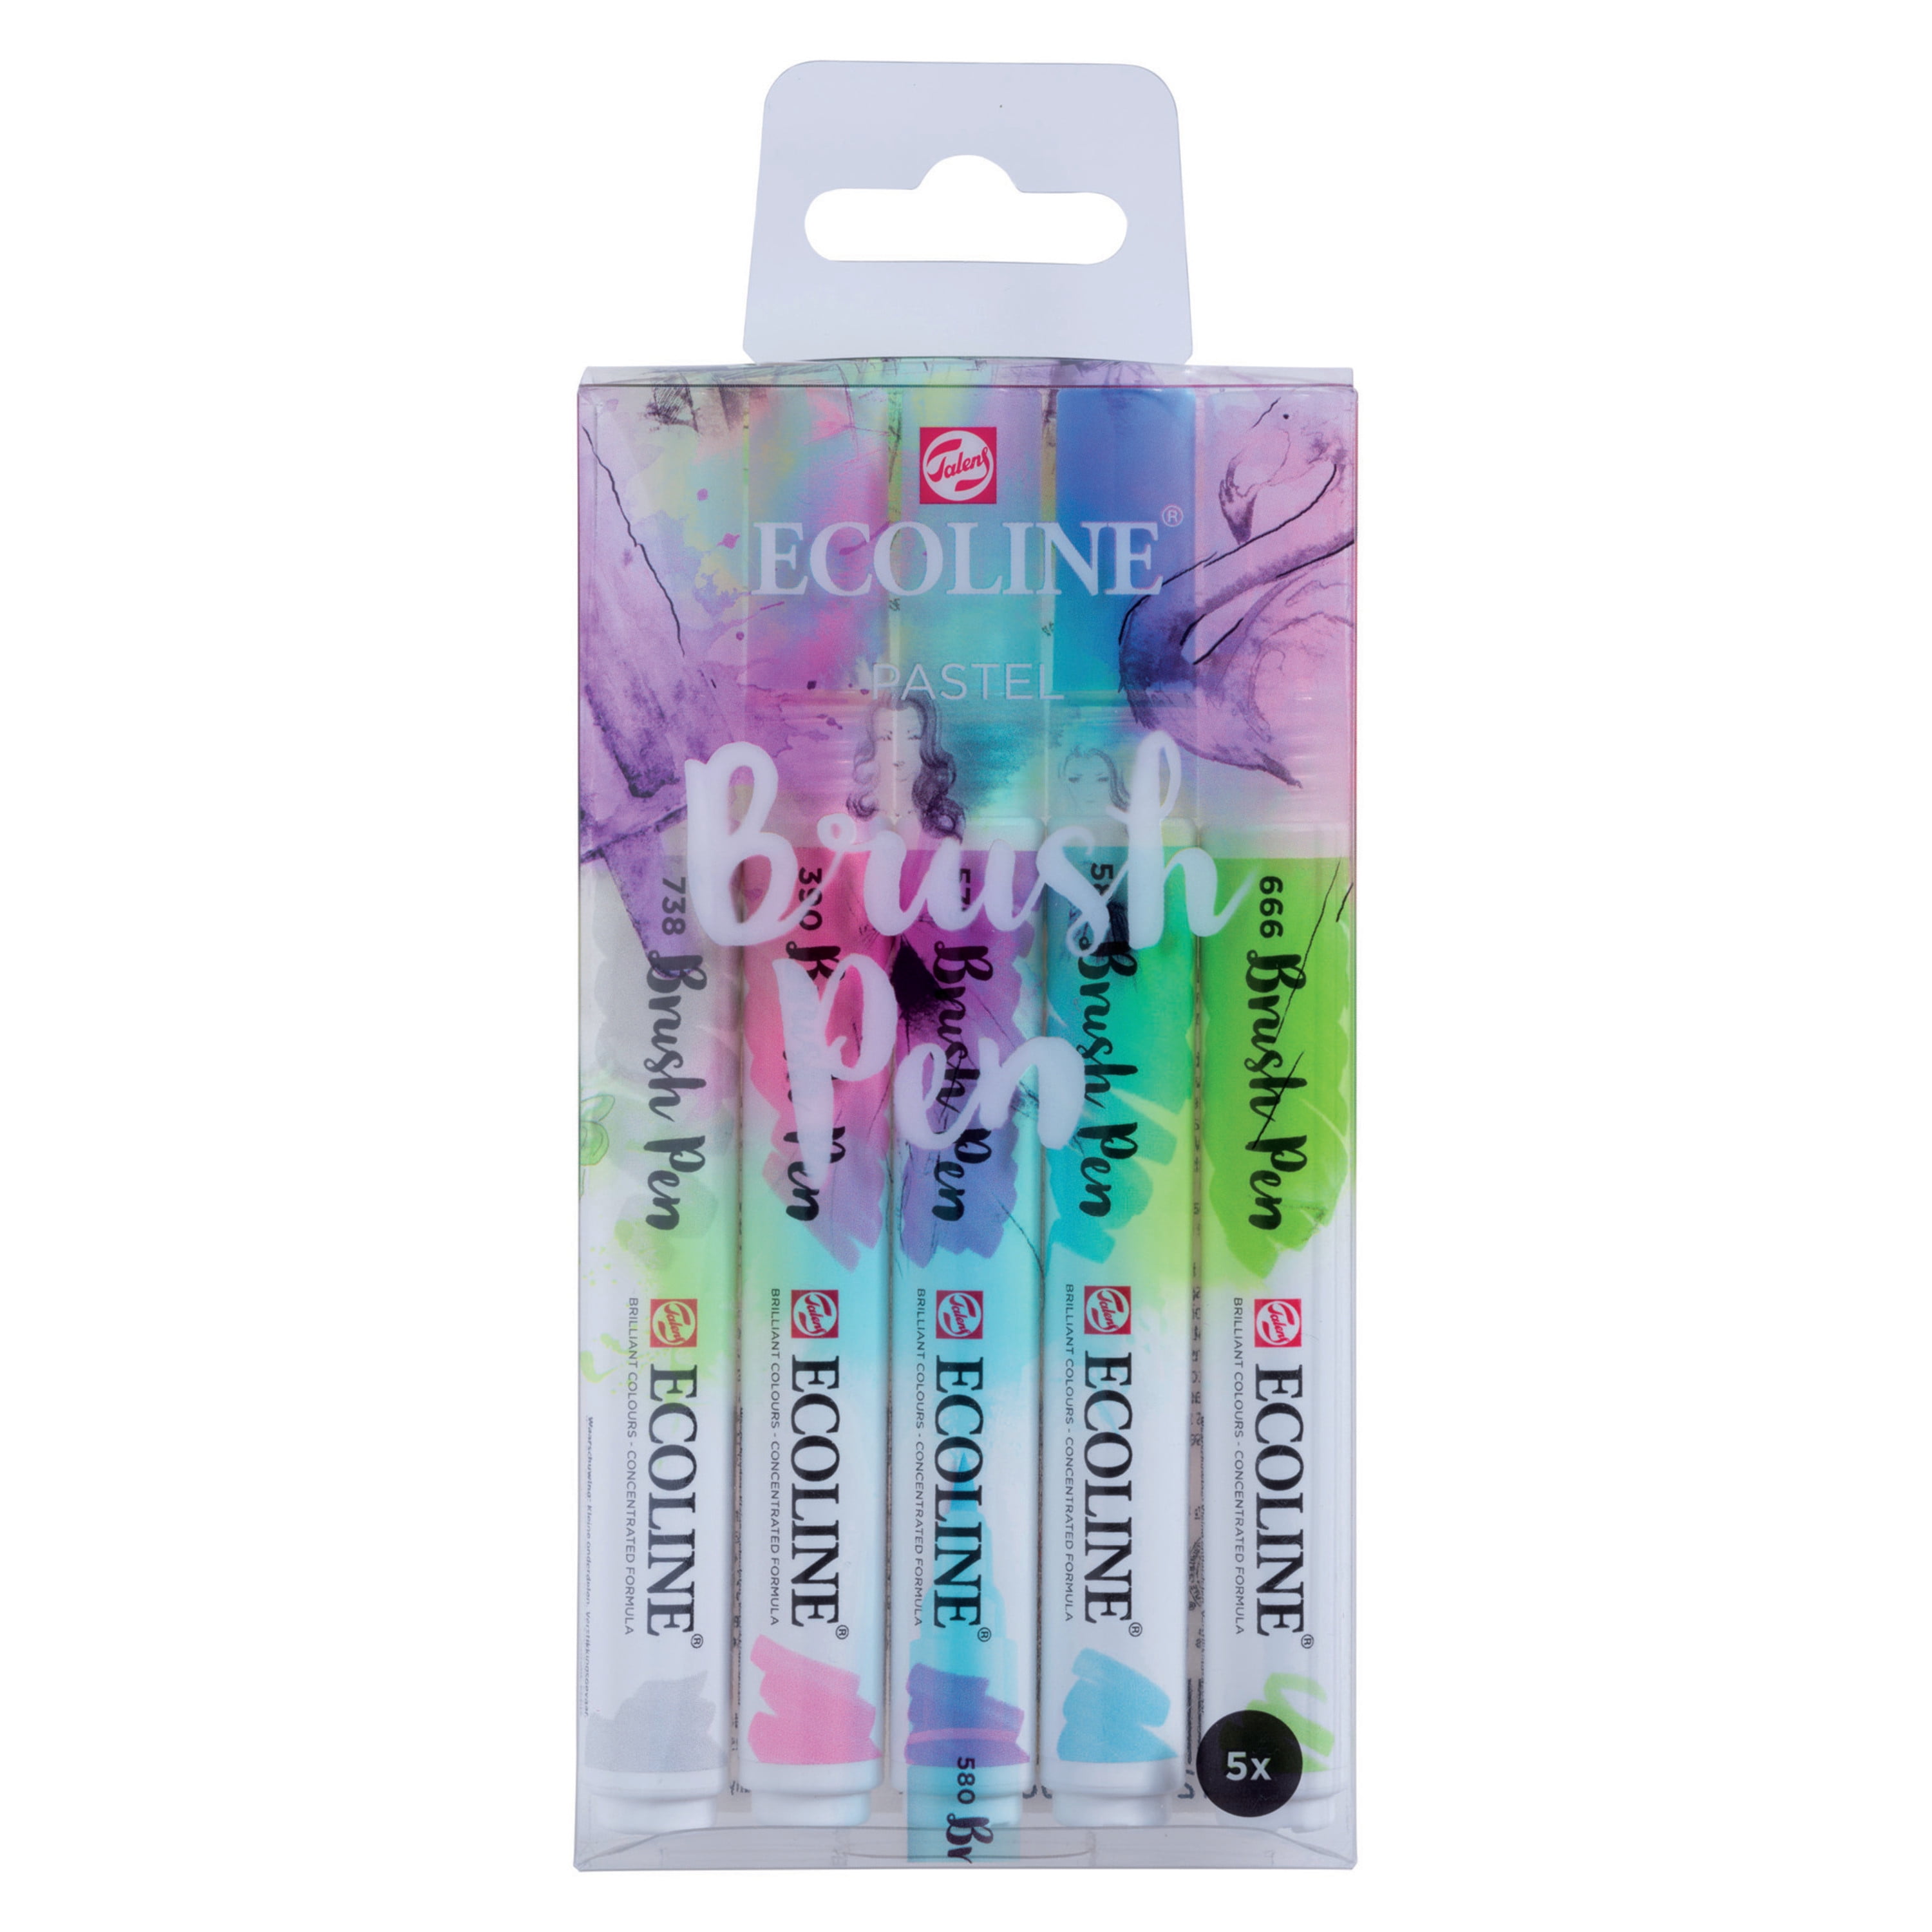 Politie Origineel Virus Ecoline Liquid Watercolour Brush Pen, 5-Color Pastel Set - Walmart.com